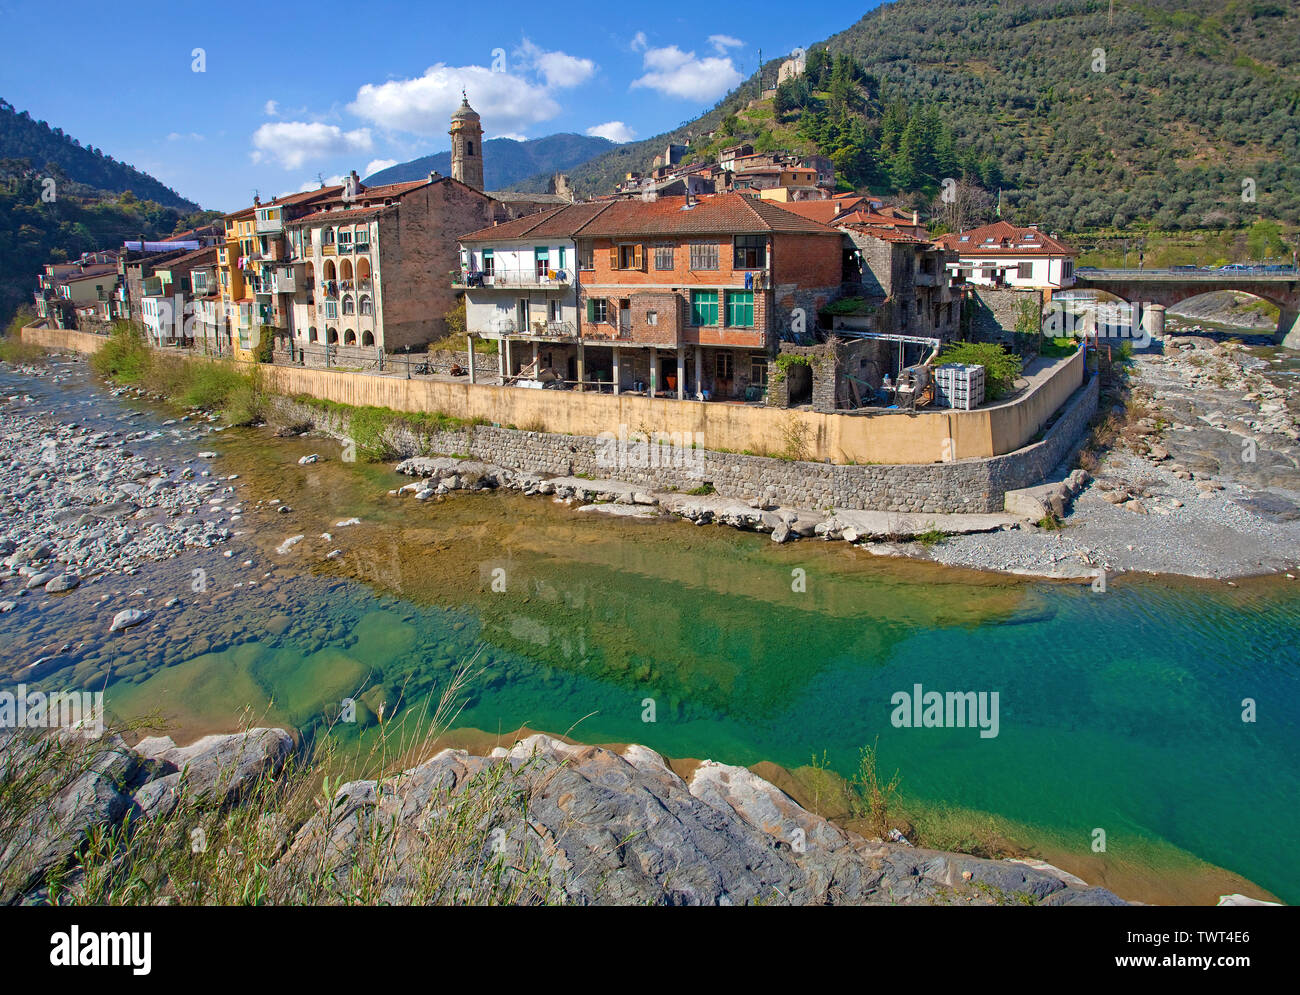 Badalucco, borgo medievale della provincia di Imperia e la Riviera di Ponente, Liguria, Italia Foto Stock